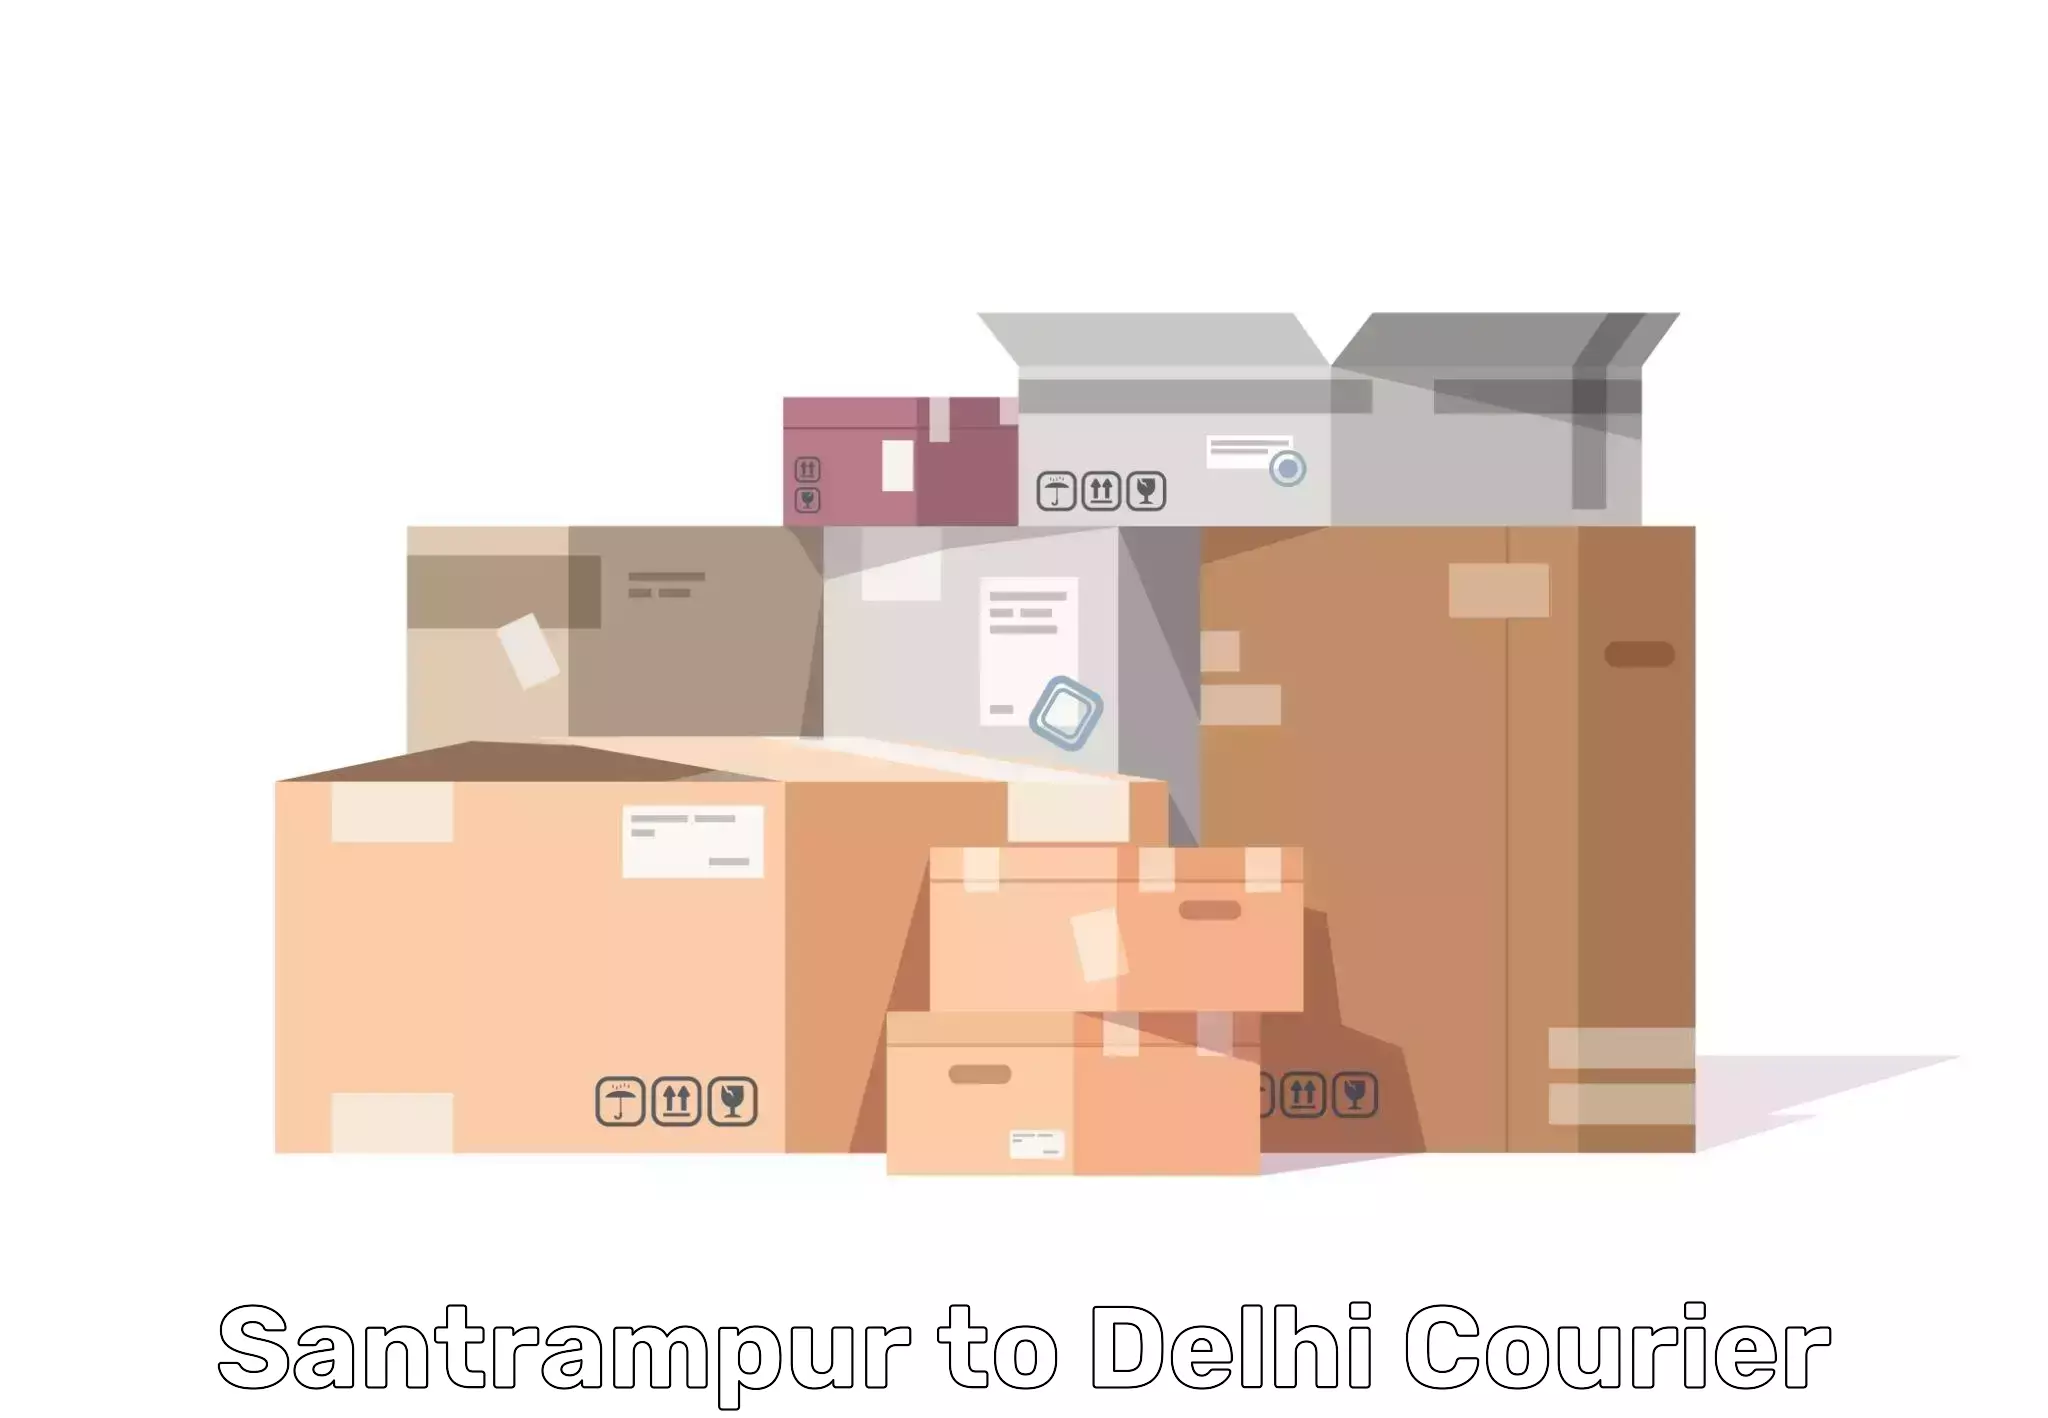 Residential furniture transport Santrampur to NCR